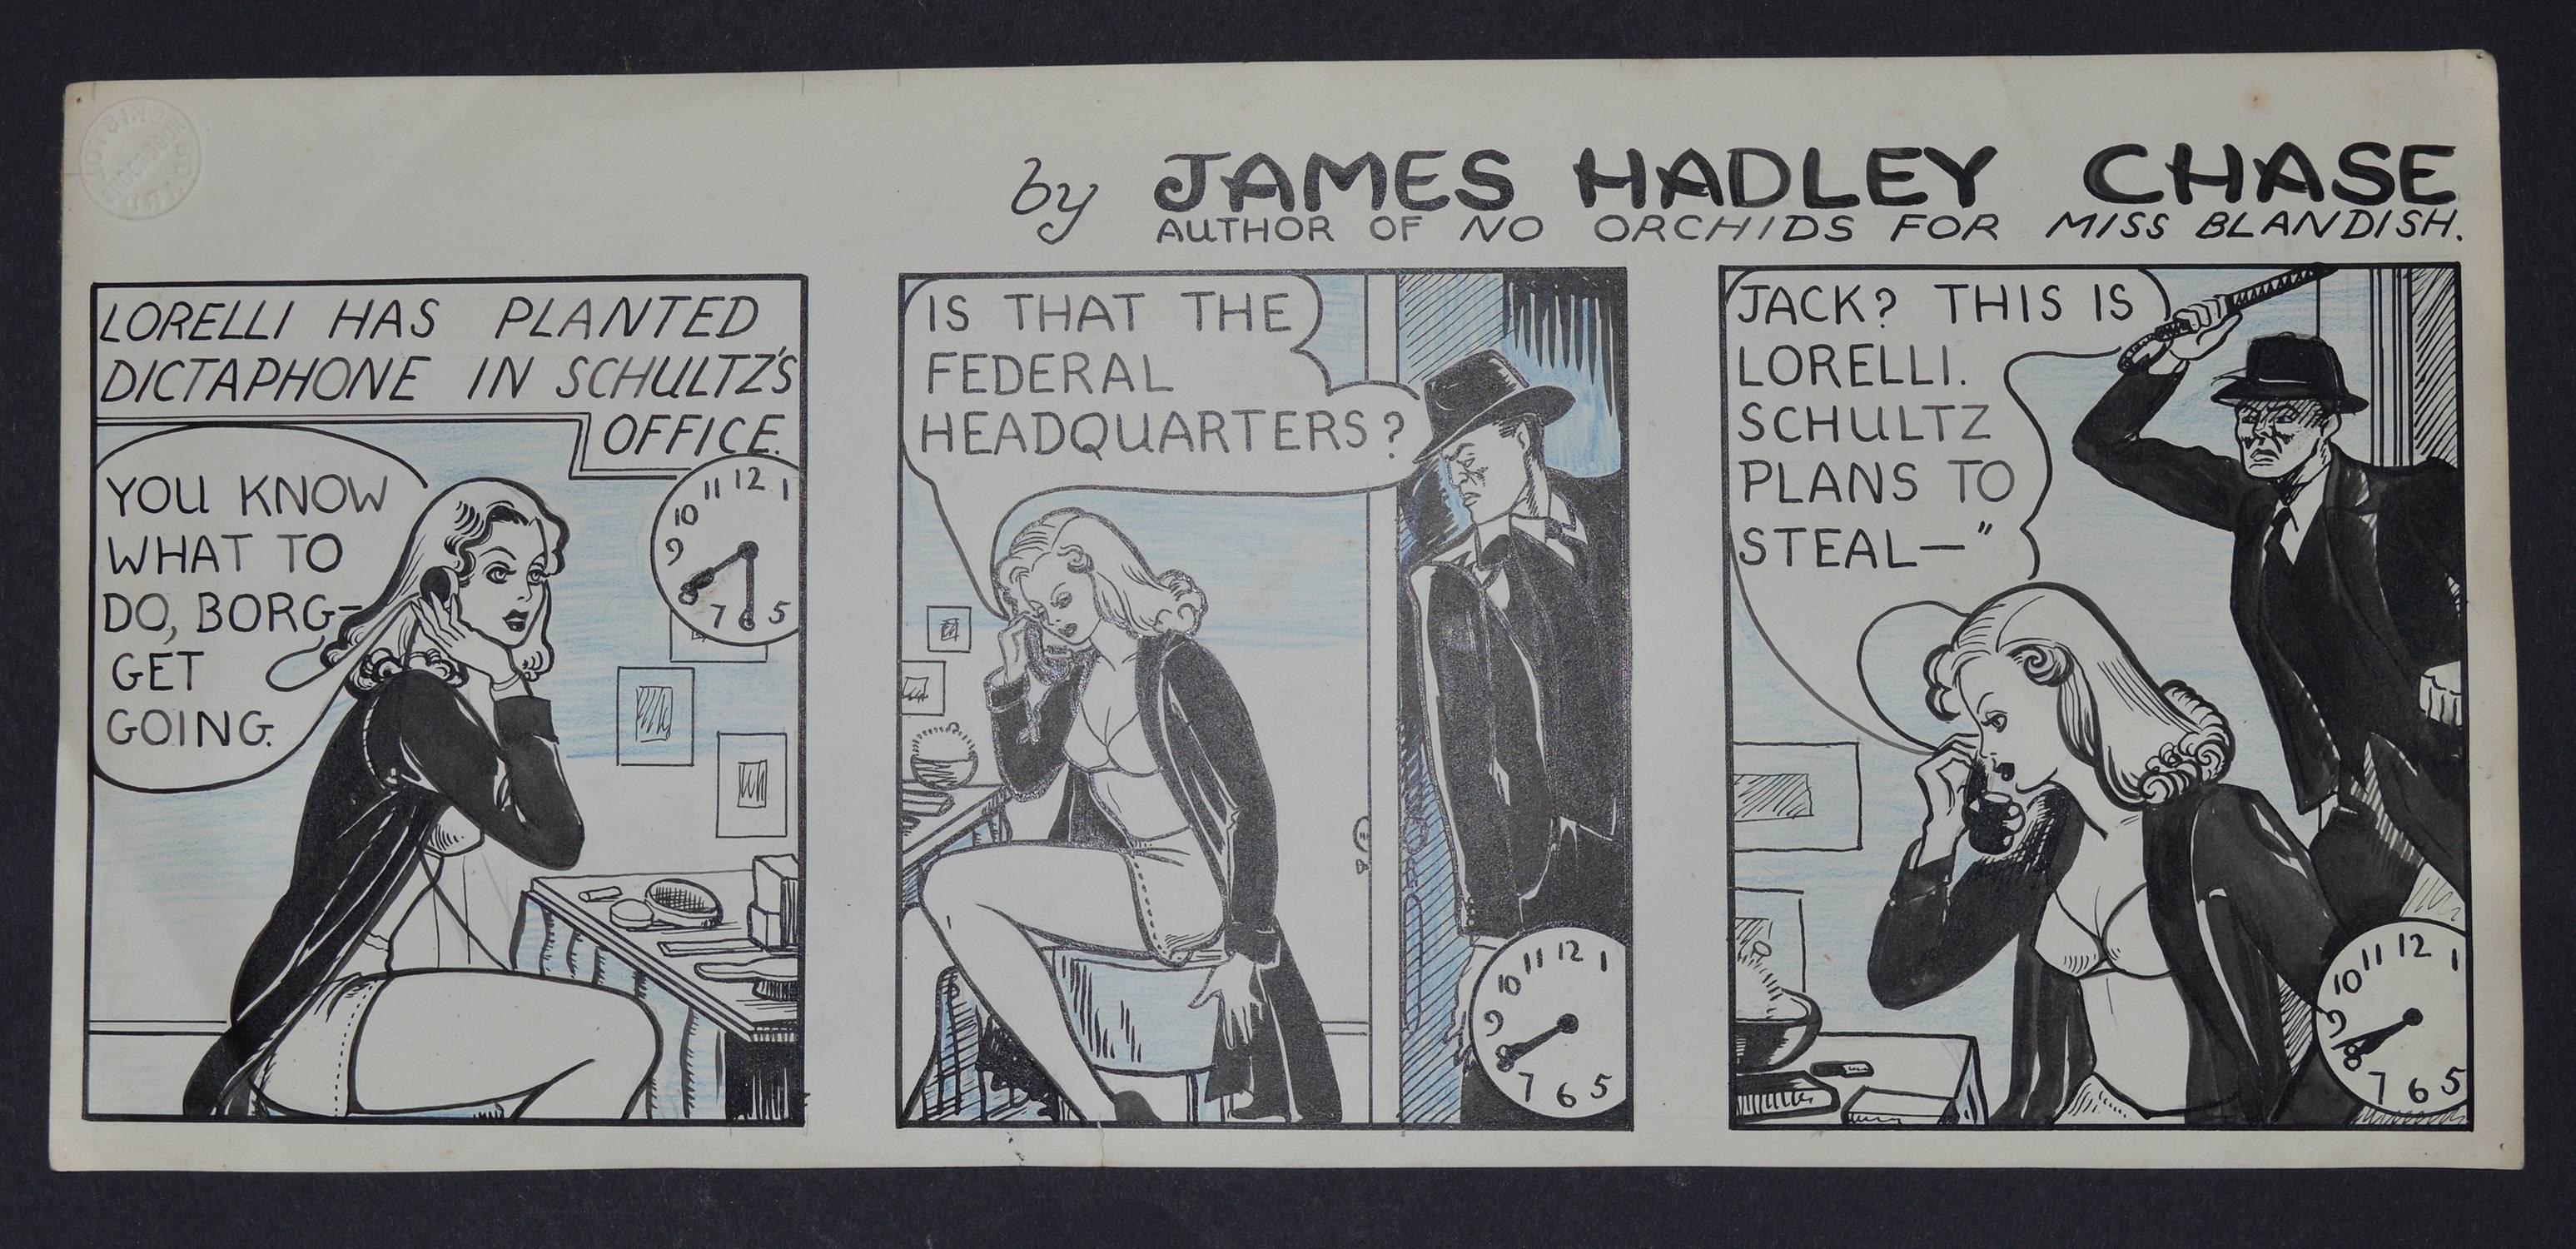 English Original Artwork for a Detective Newspaper Strip, 1940s